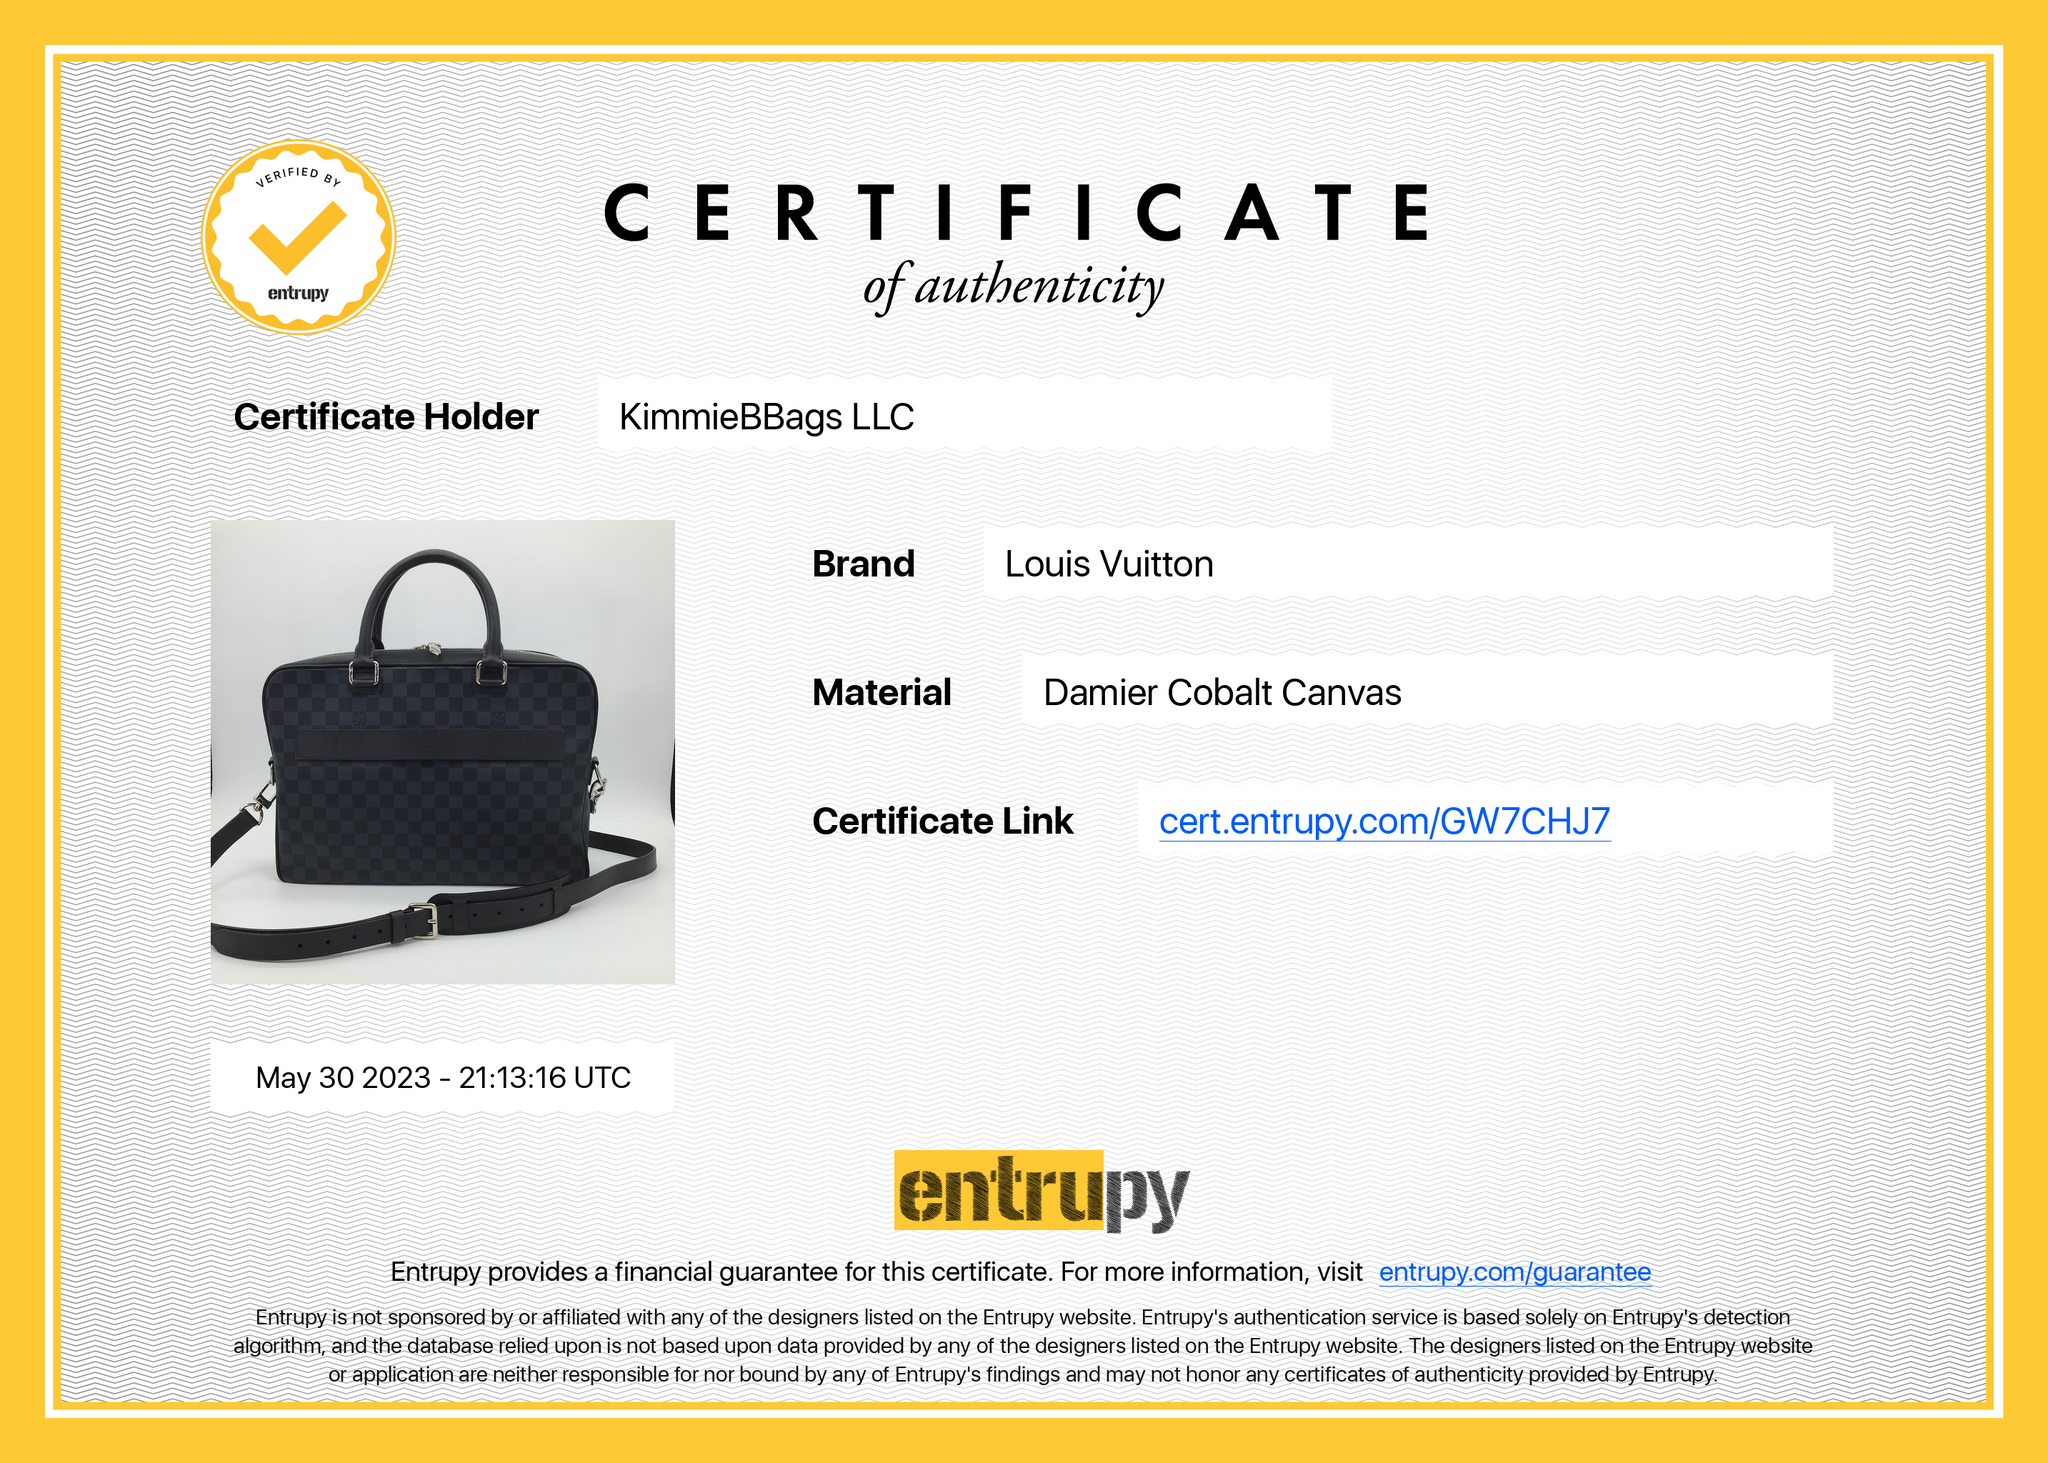 Louis Vuitton Porte-Documents Damier Cobalt Business Bag at